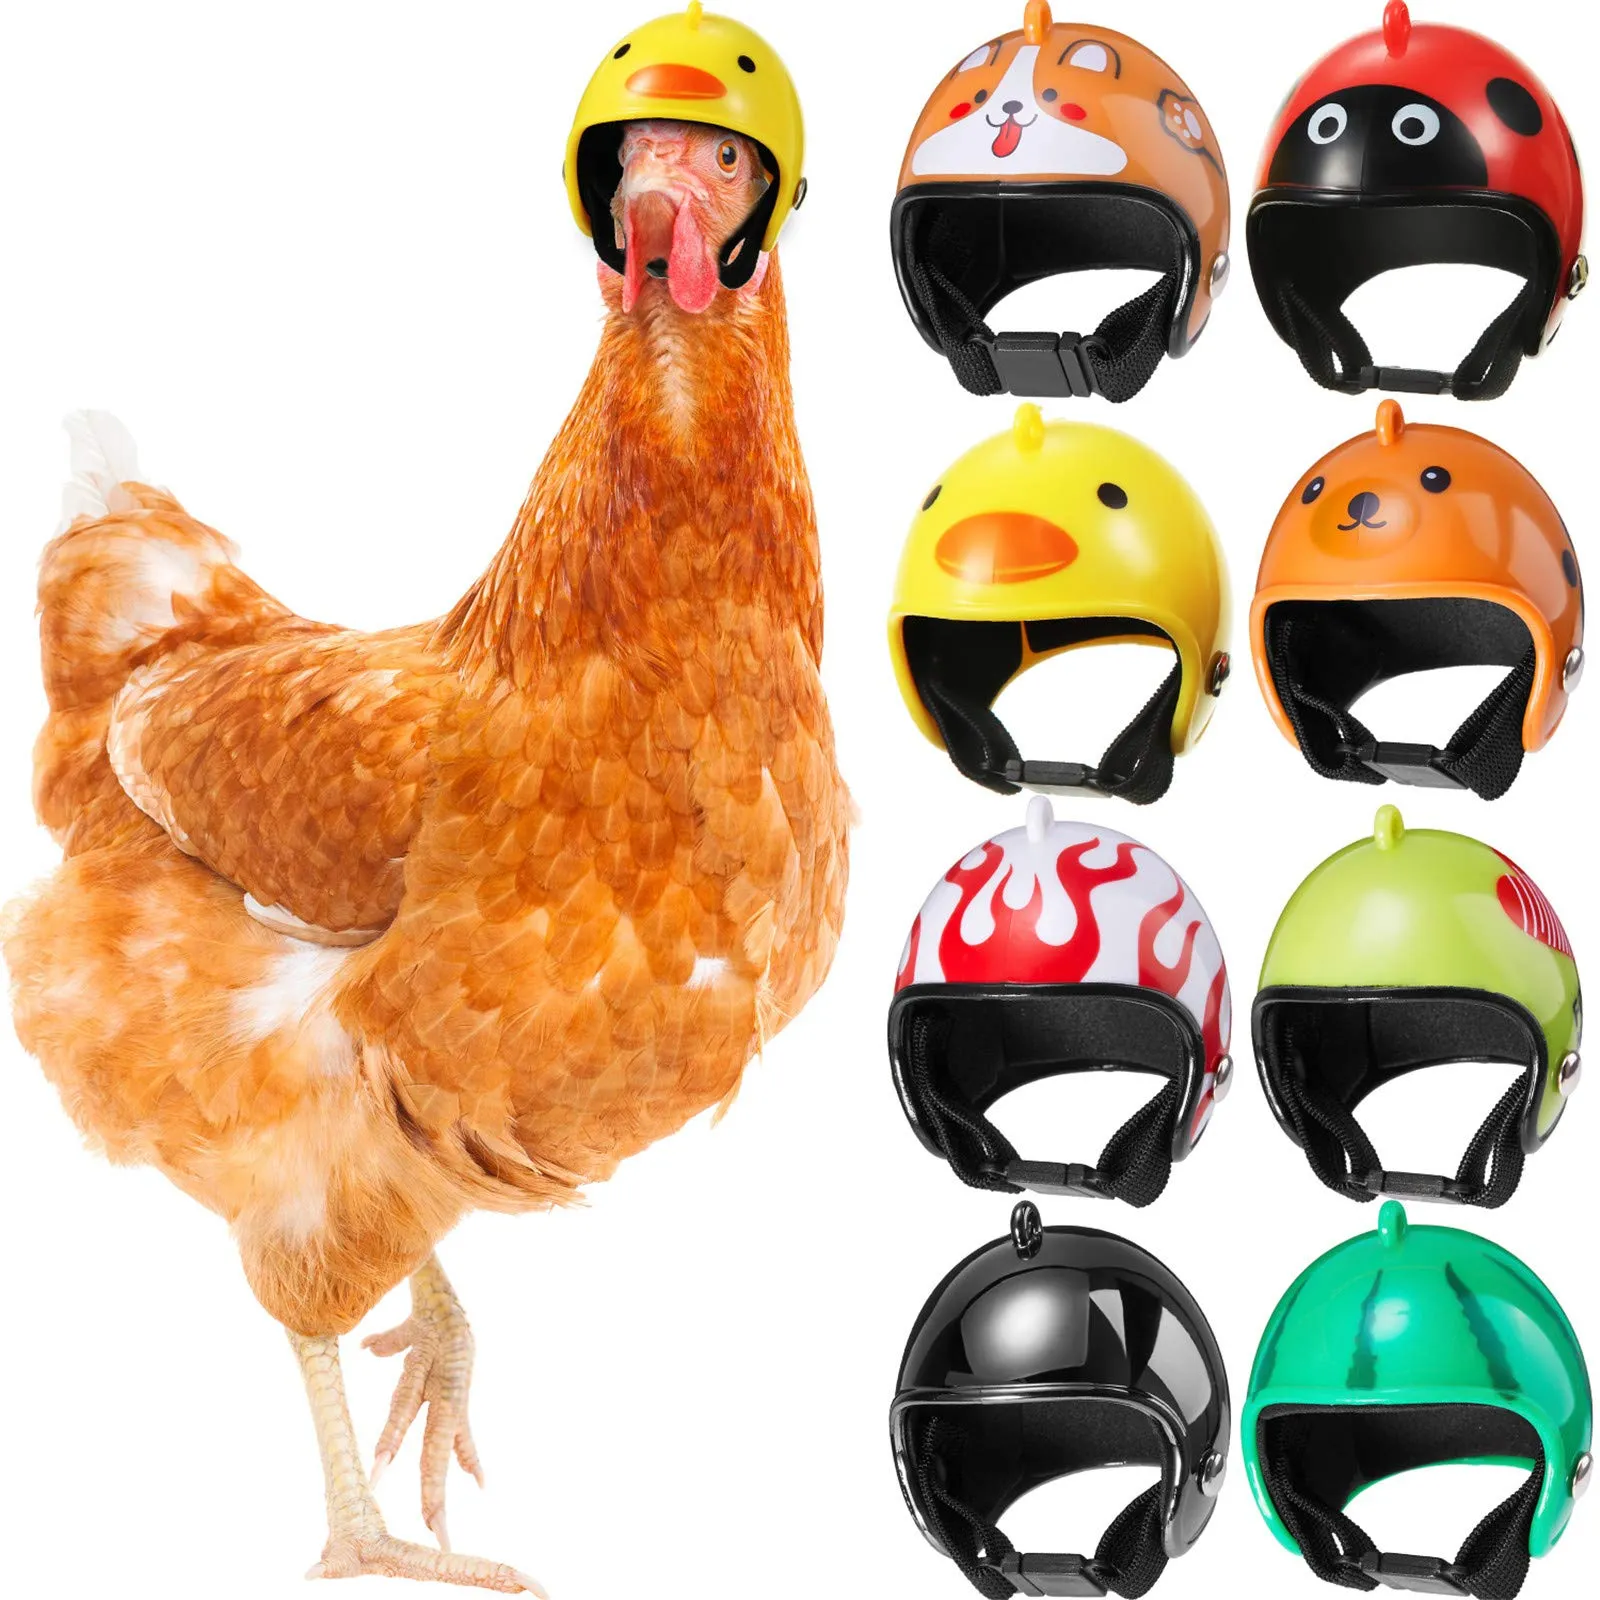 Casque de sécurité pour poules, protection contre les picotements, couvre-tête de perroquet amusant, chapeau d'oiseau, couvre-chef pour petits animaux, accessoires pour poulets, coqs, perruches